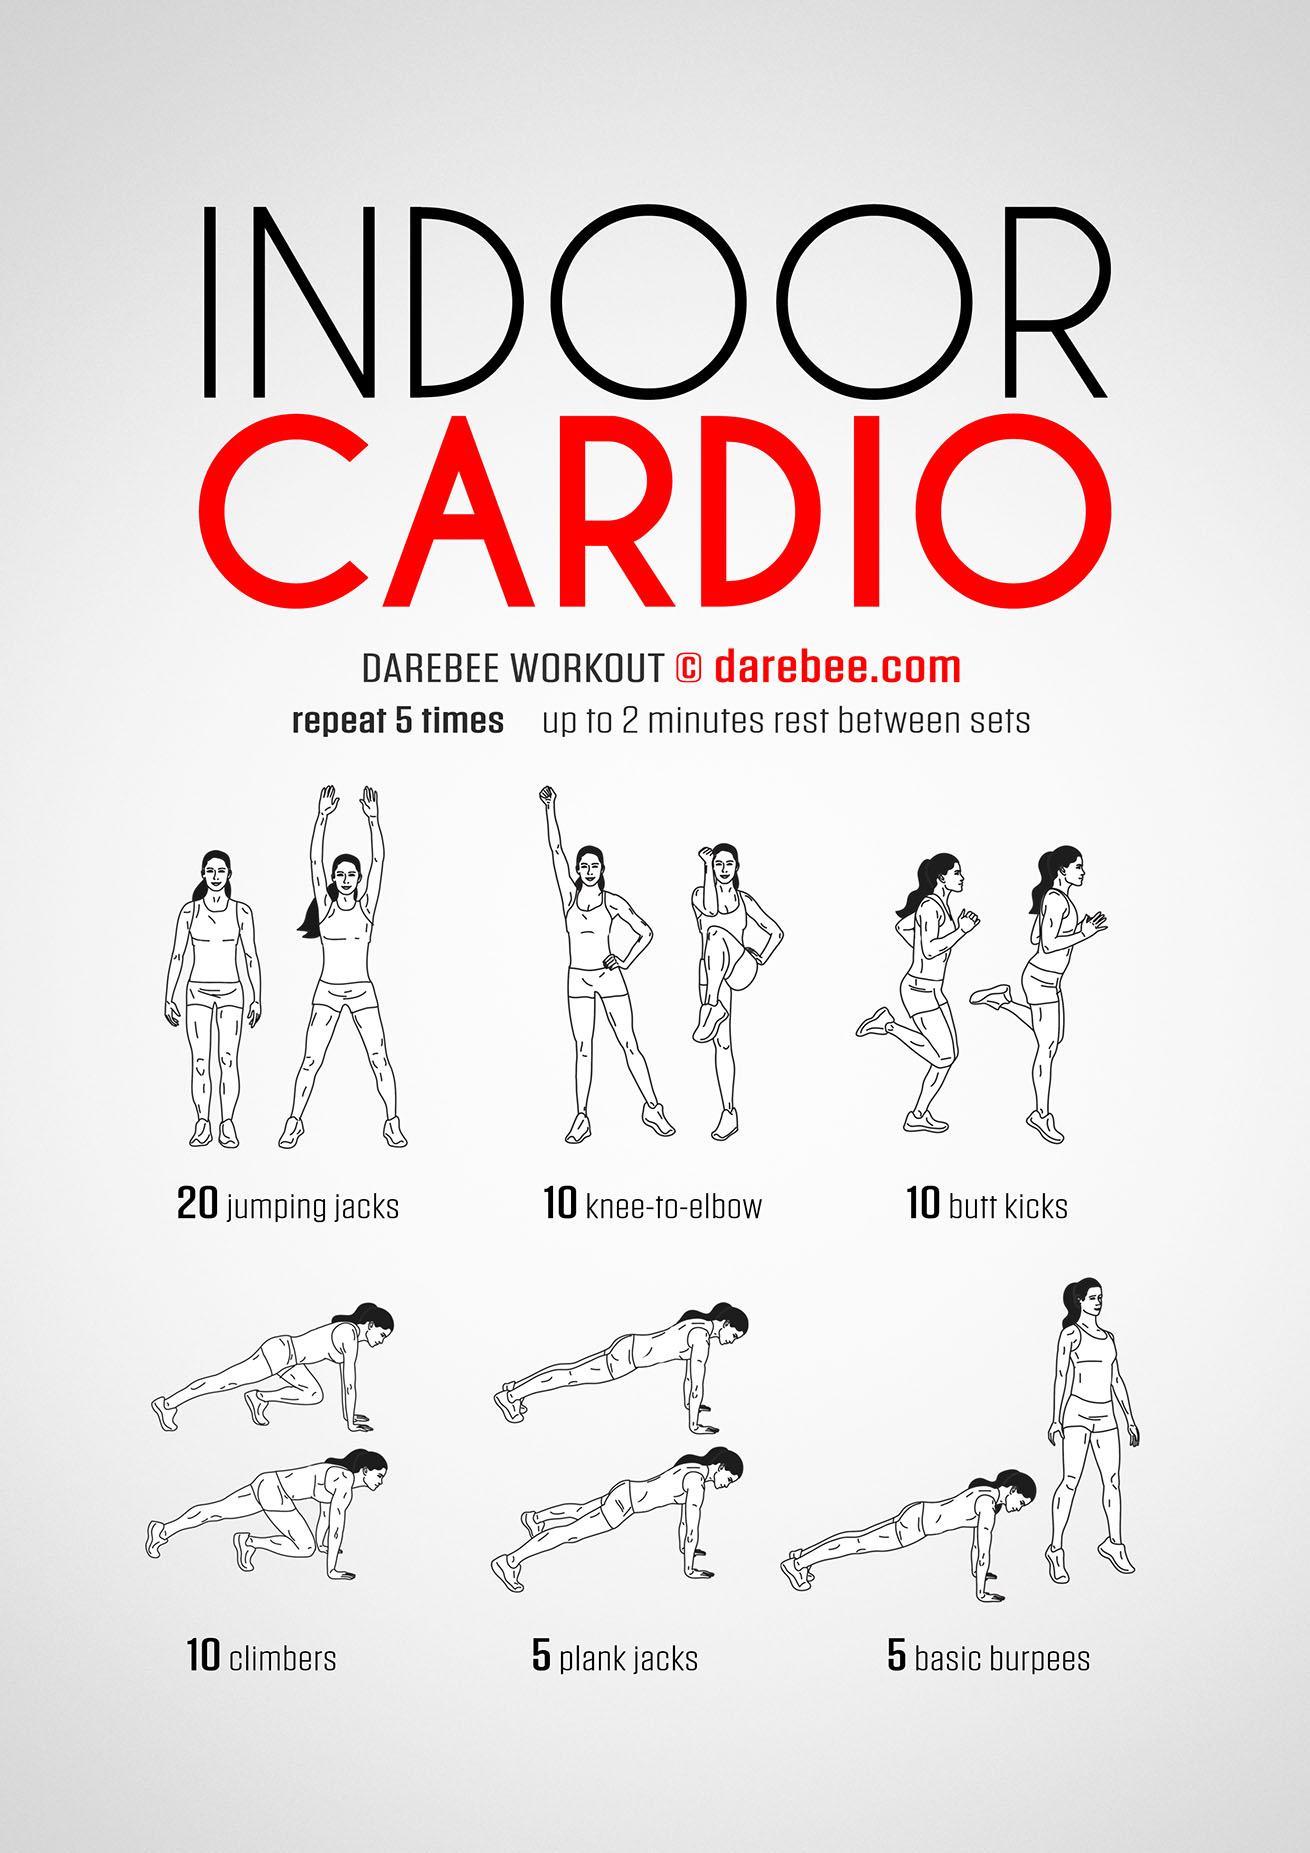 https://darebee.com/images/workouts/indoor-cardio-workout.jpg